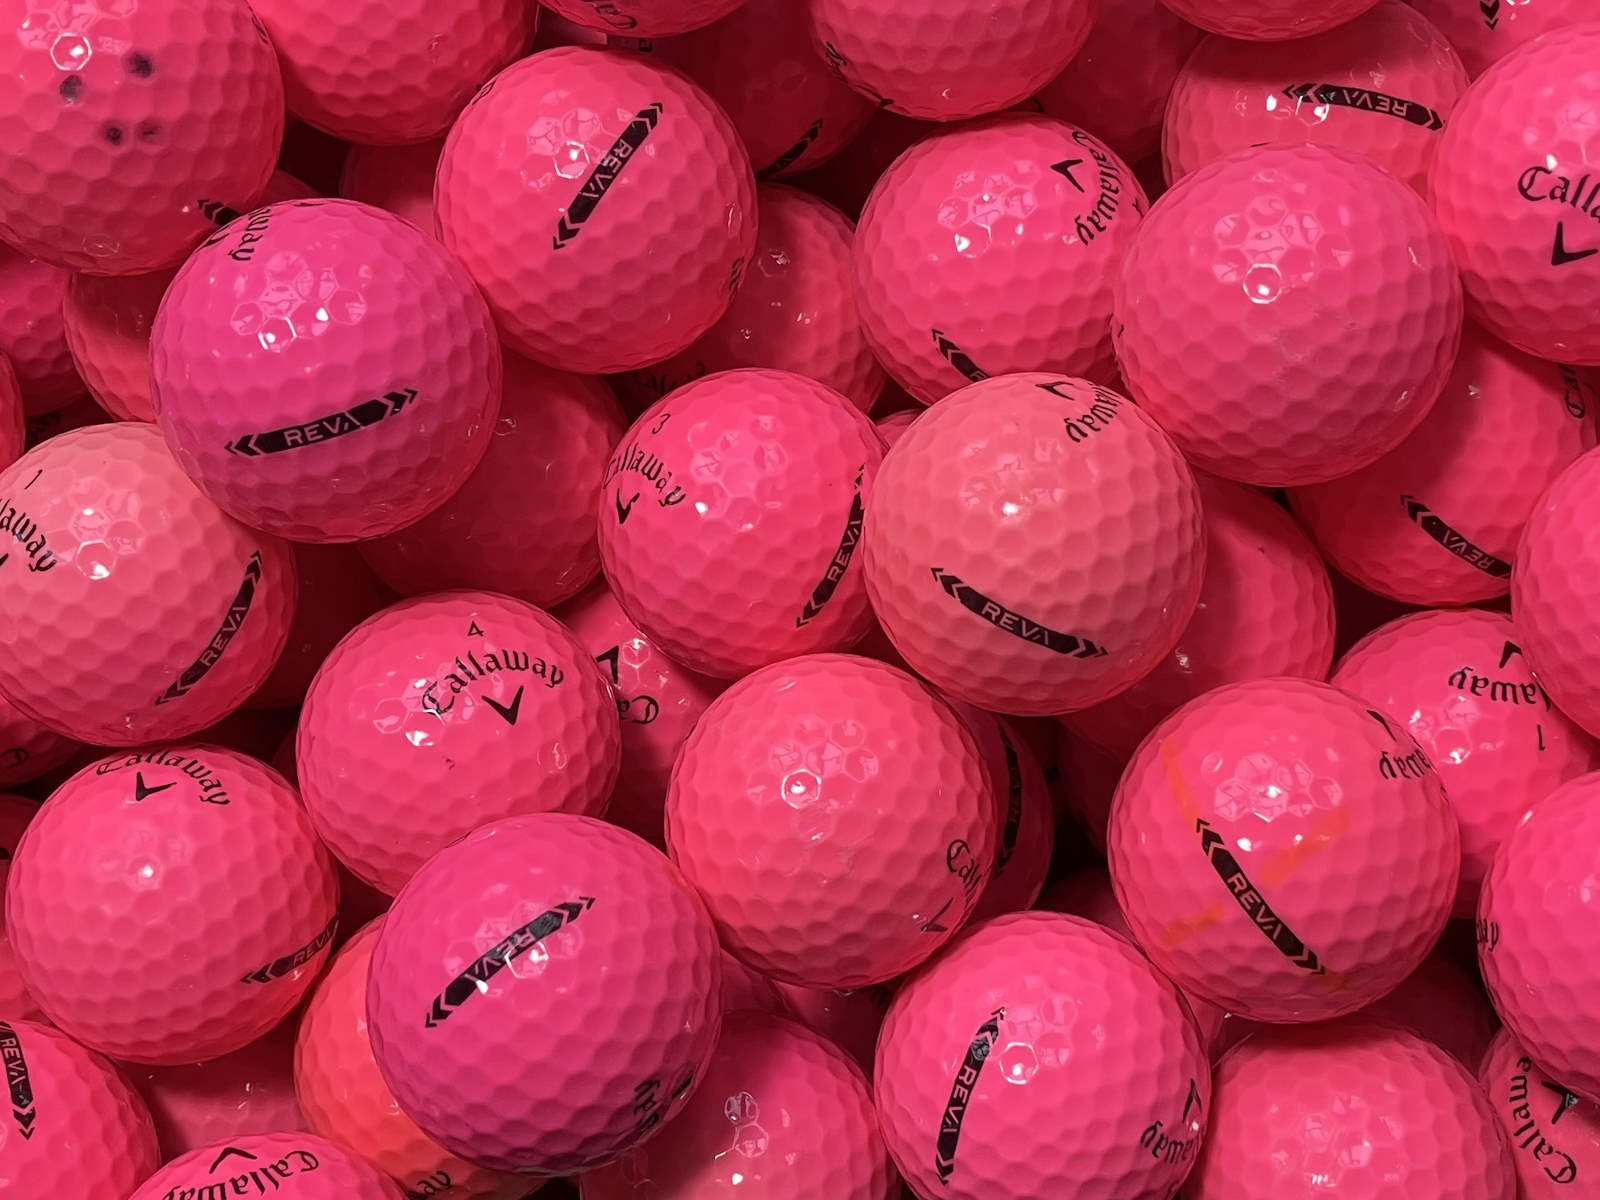 Callaway REVA Pink Lakeballs - gebrauchte REVA Pink Golfbälle AA/AAA-Qualität